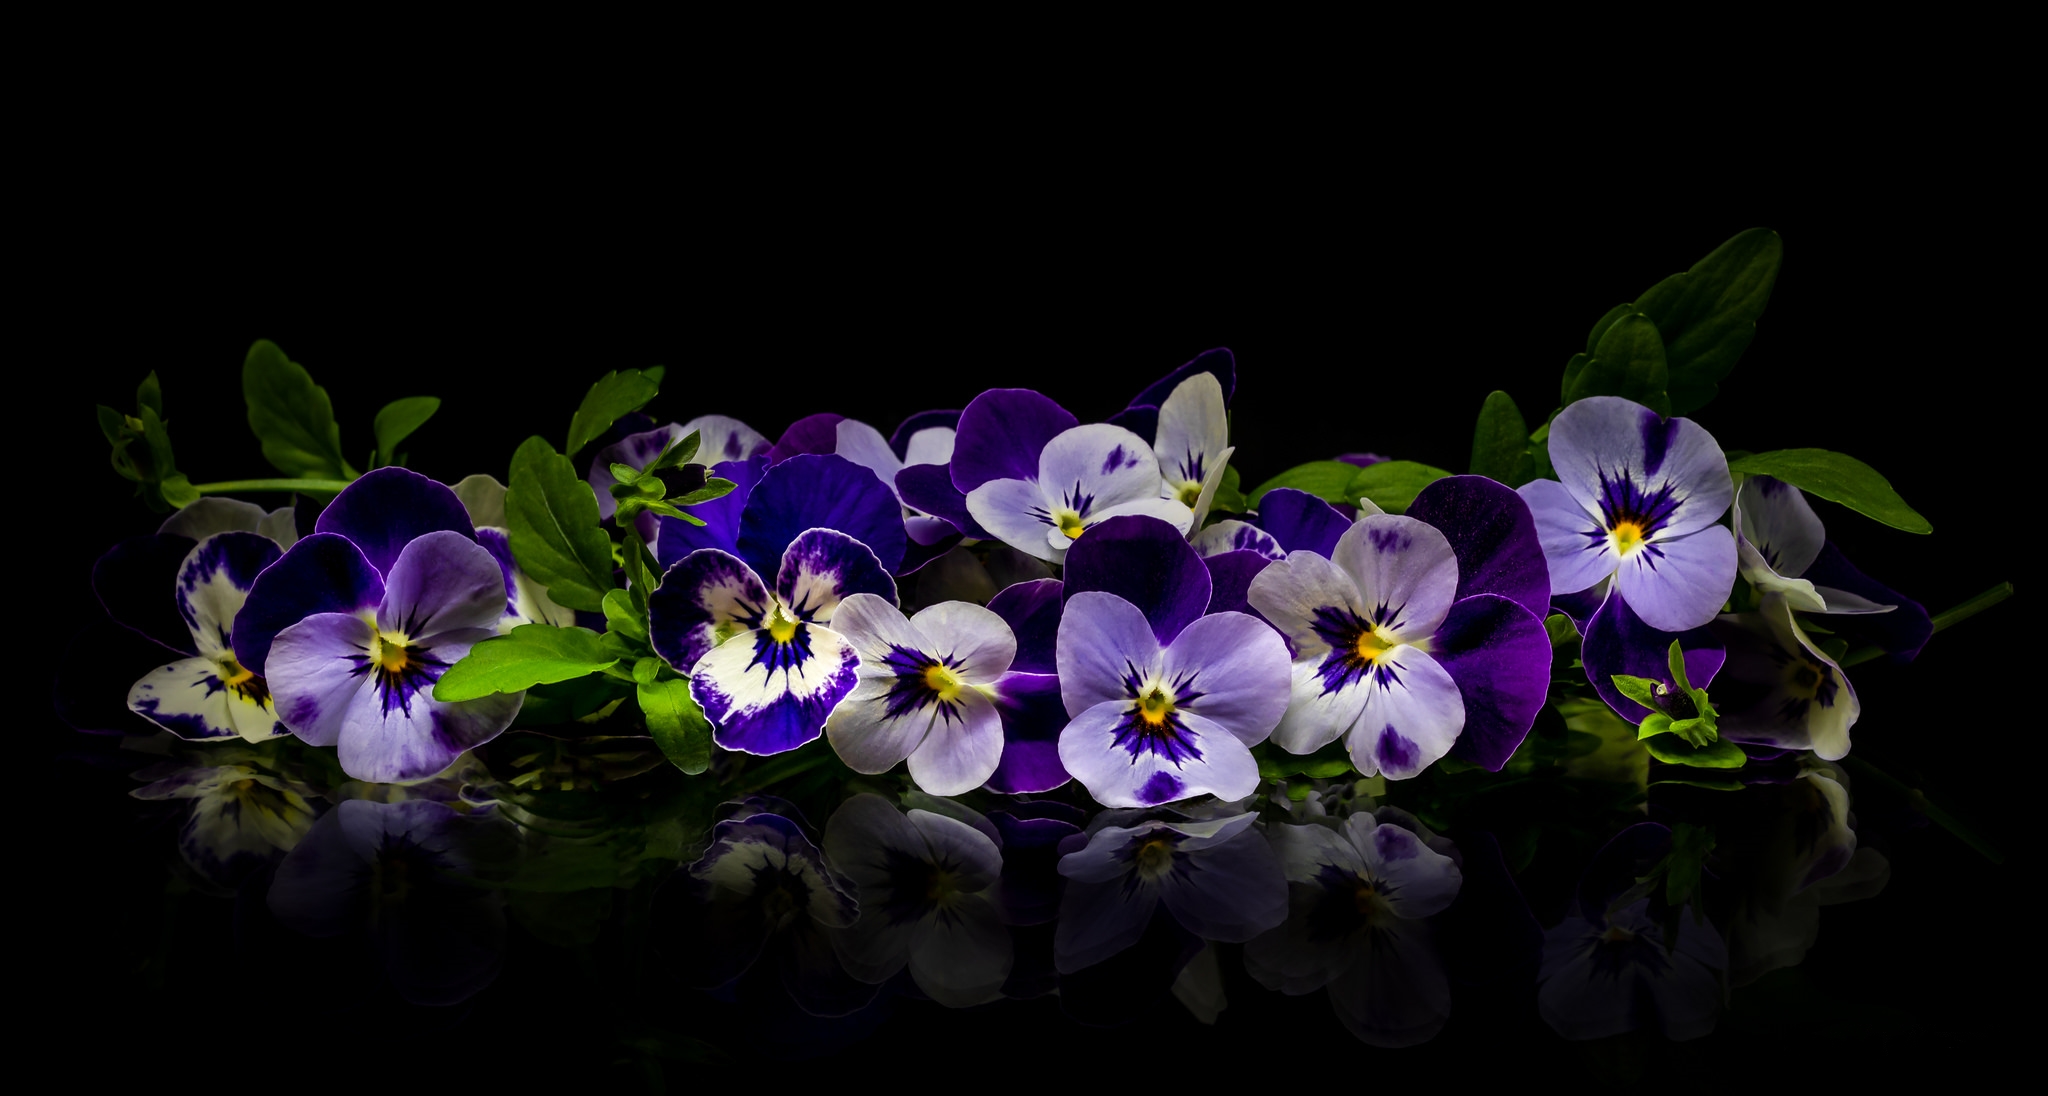 Wallpapers Viola flower flowers on the desktop